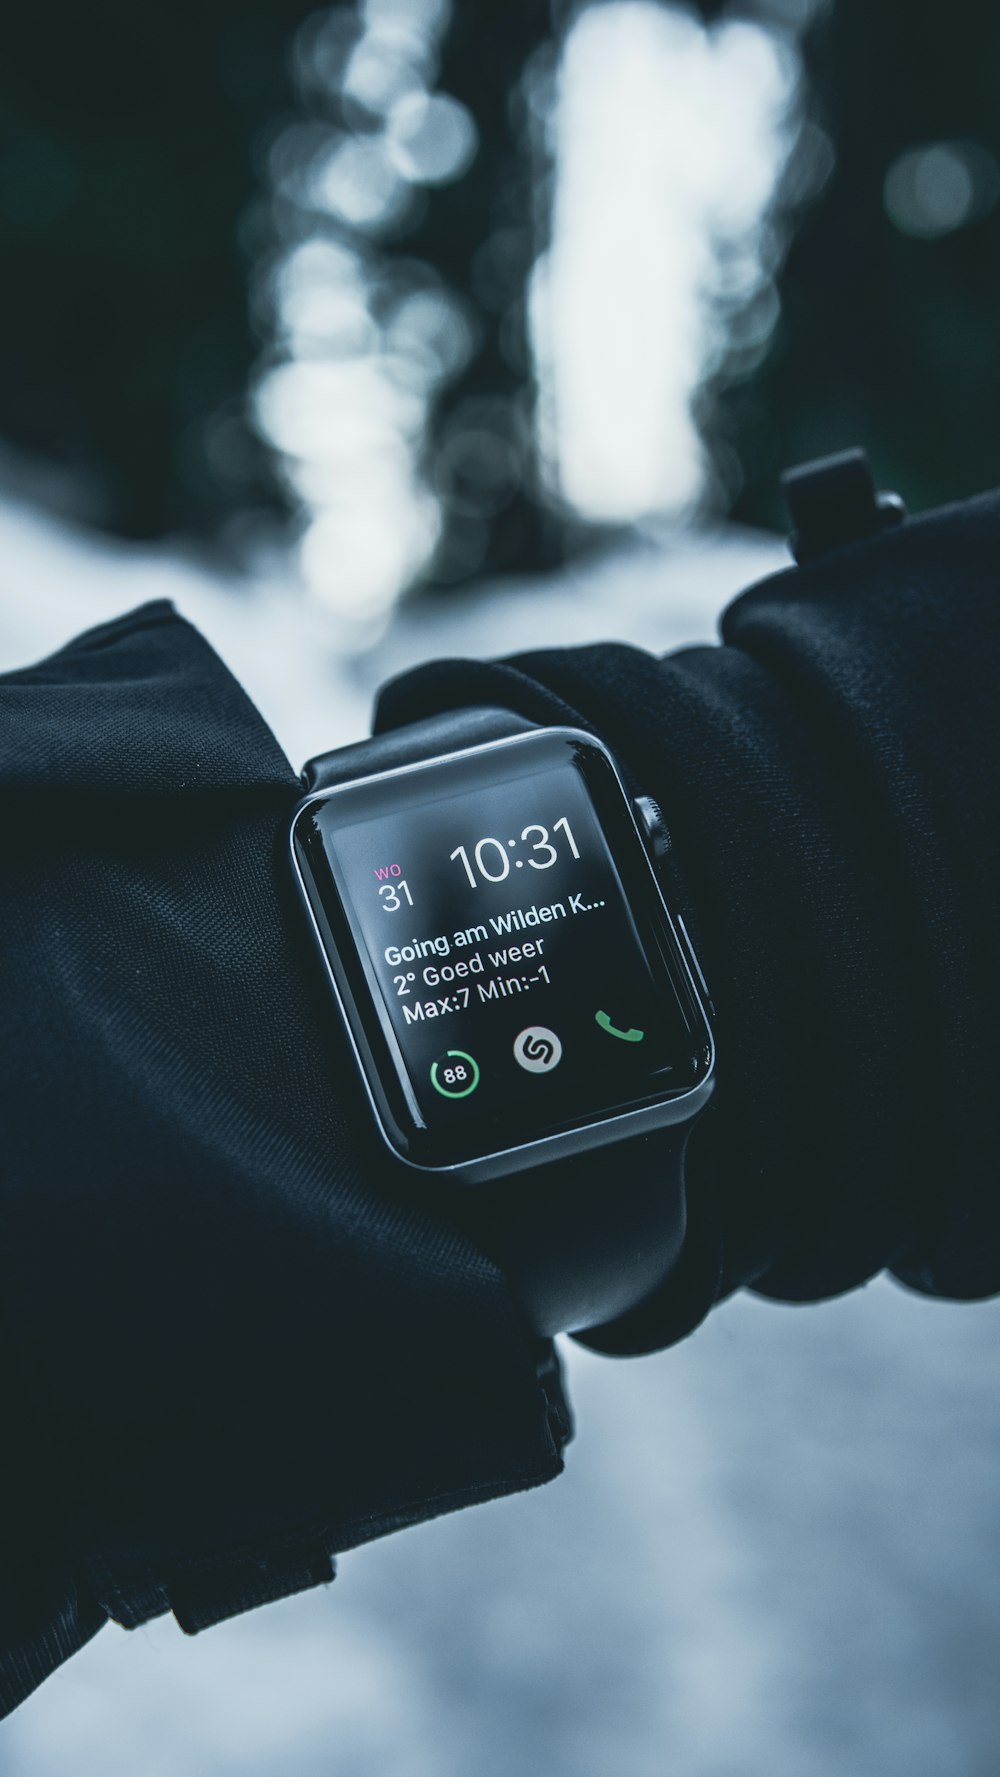 Flachfokusfotografie der silbernen Apple Watch mit schwarzem Sportarmband